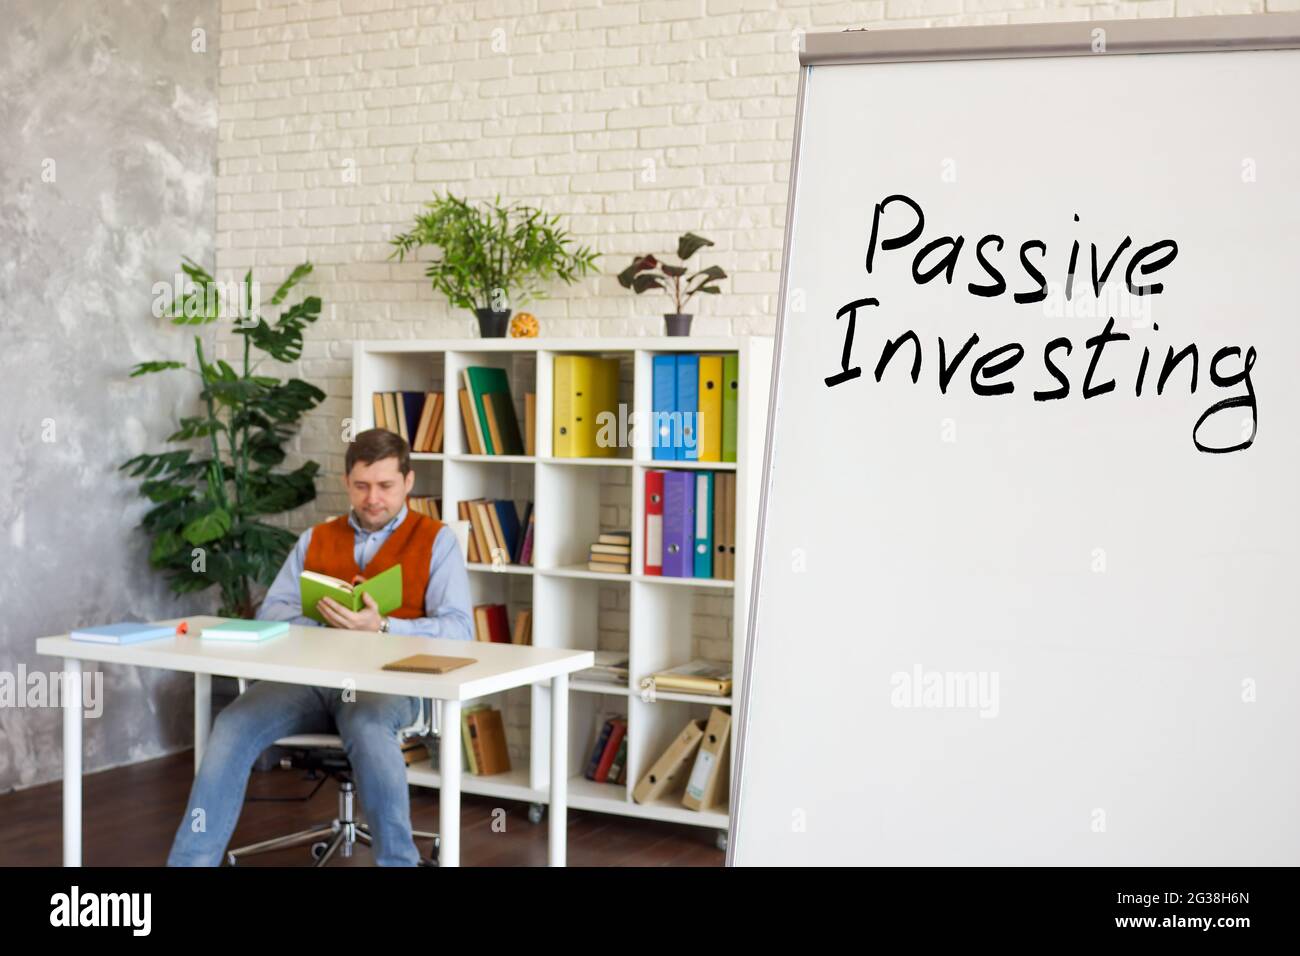 Passiv investierende Wörter auf dem Whiteboard im Raum. Stockfoto